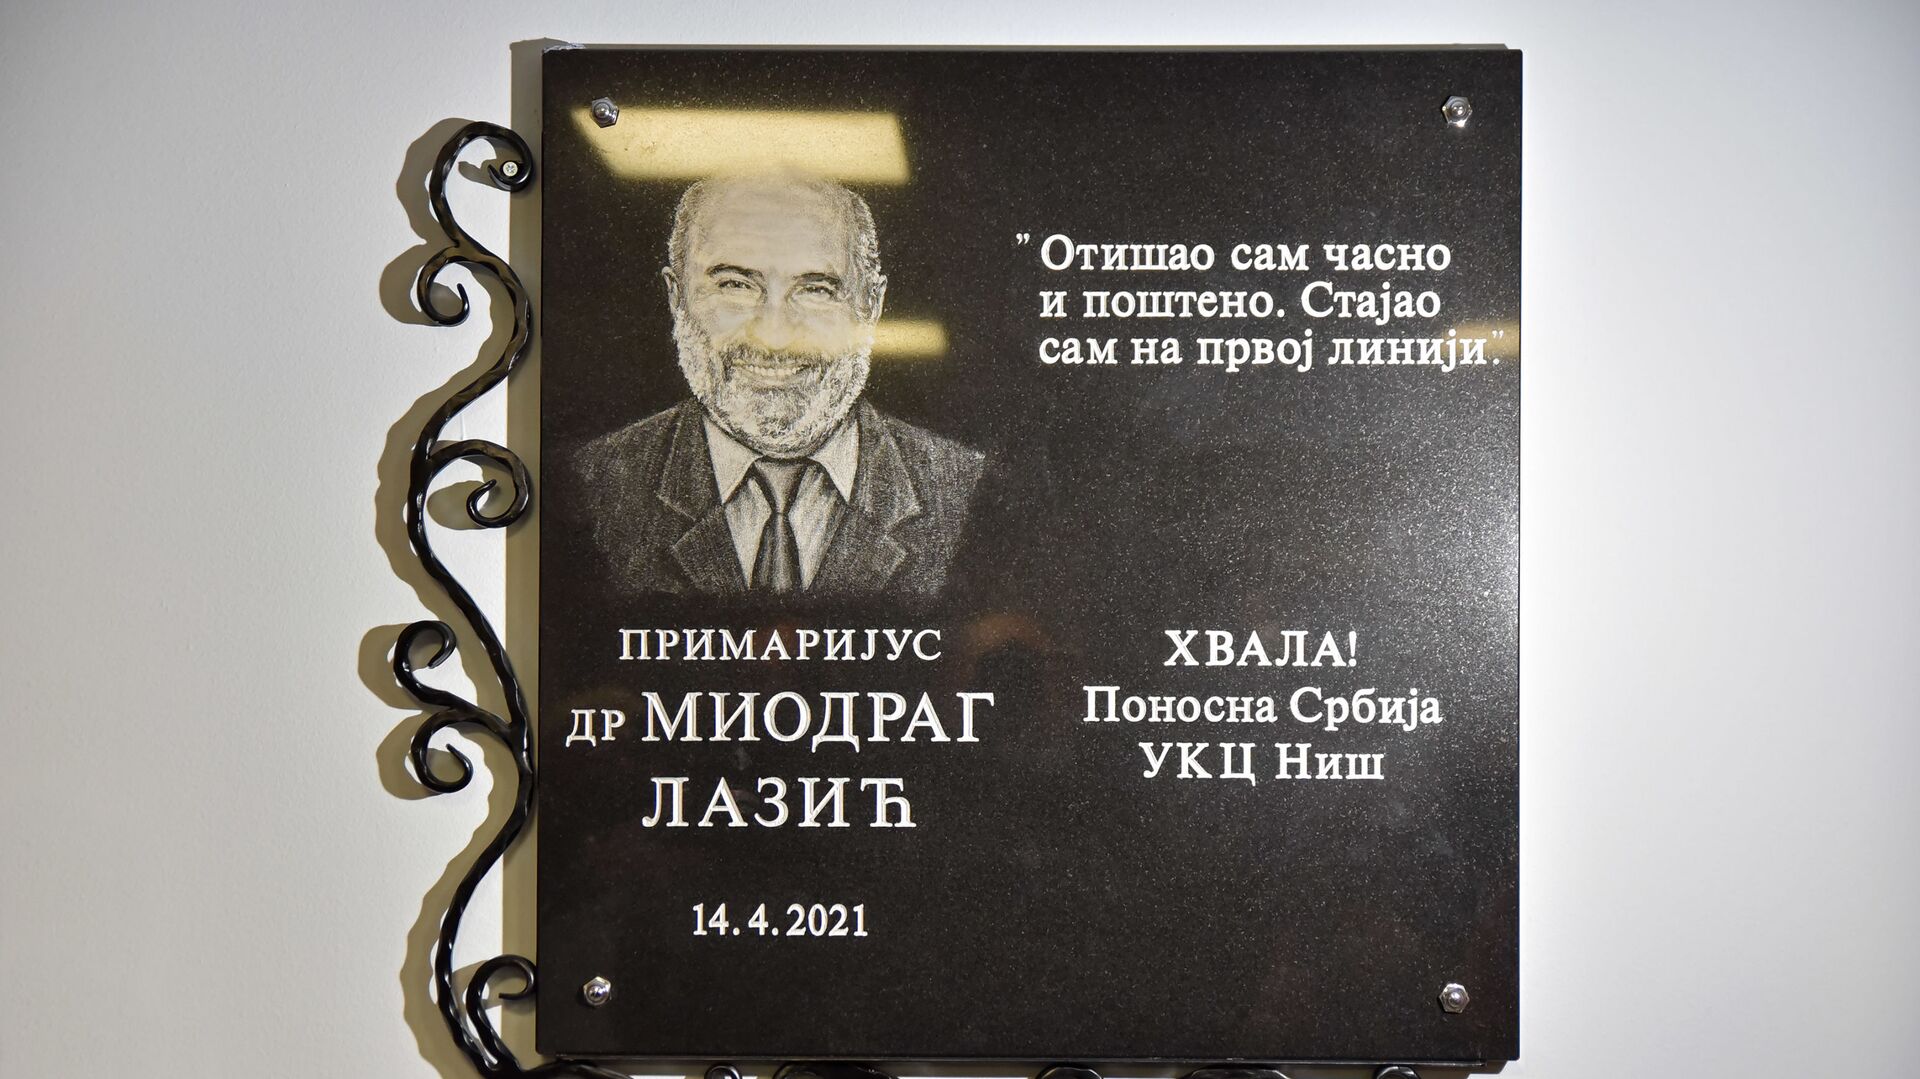 Spomen-ploča u čast pokojnog dr Miodraga Lazića Laze, ratnog hirurga, radnika UKC Niš i dugogodišnjeg direktora Urgentnog centra - Sputnik Srbija, 1920, 14.04.2021